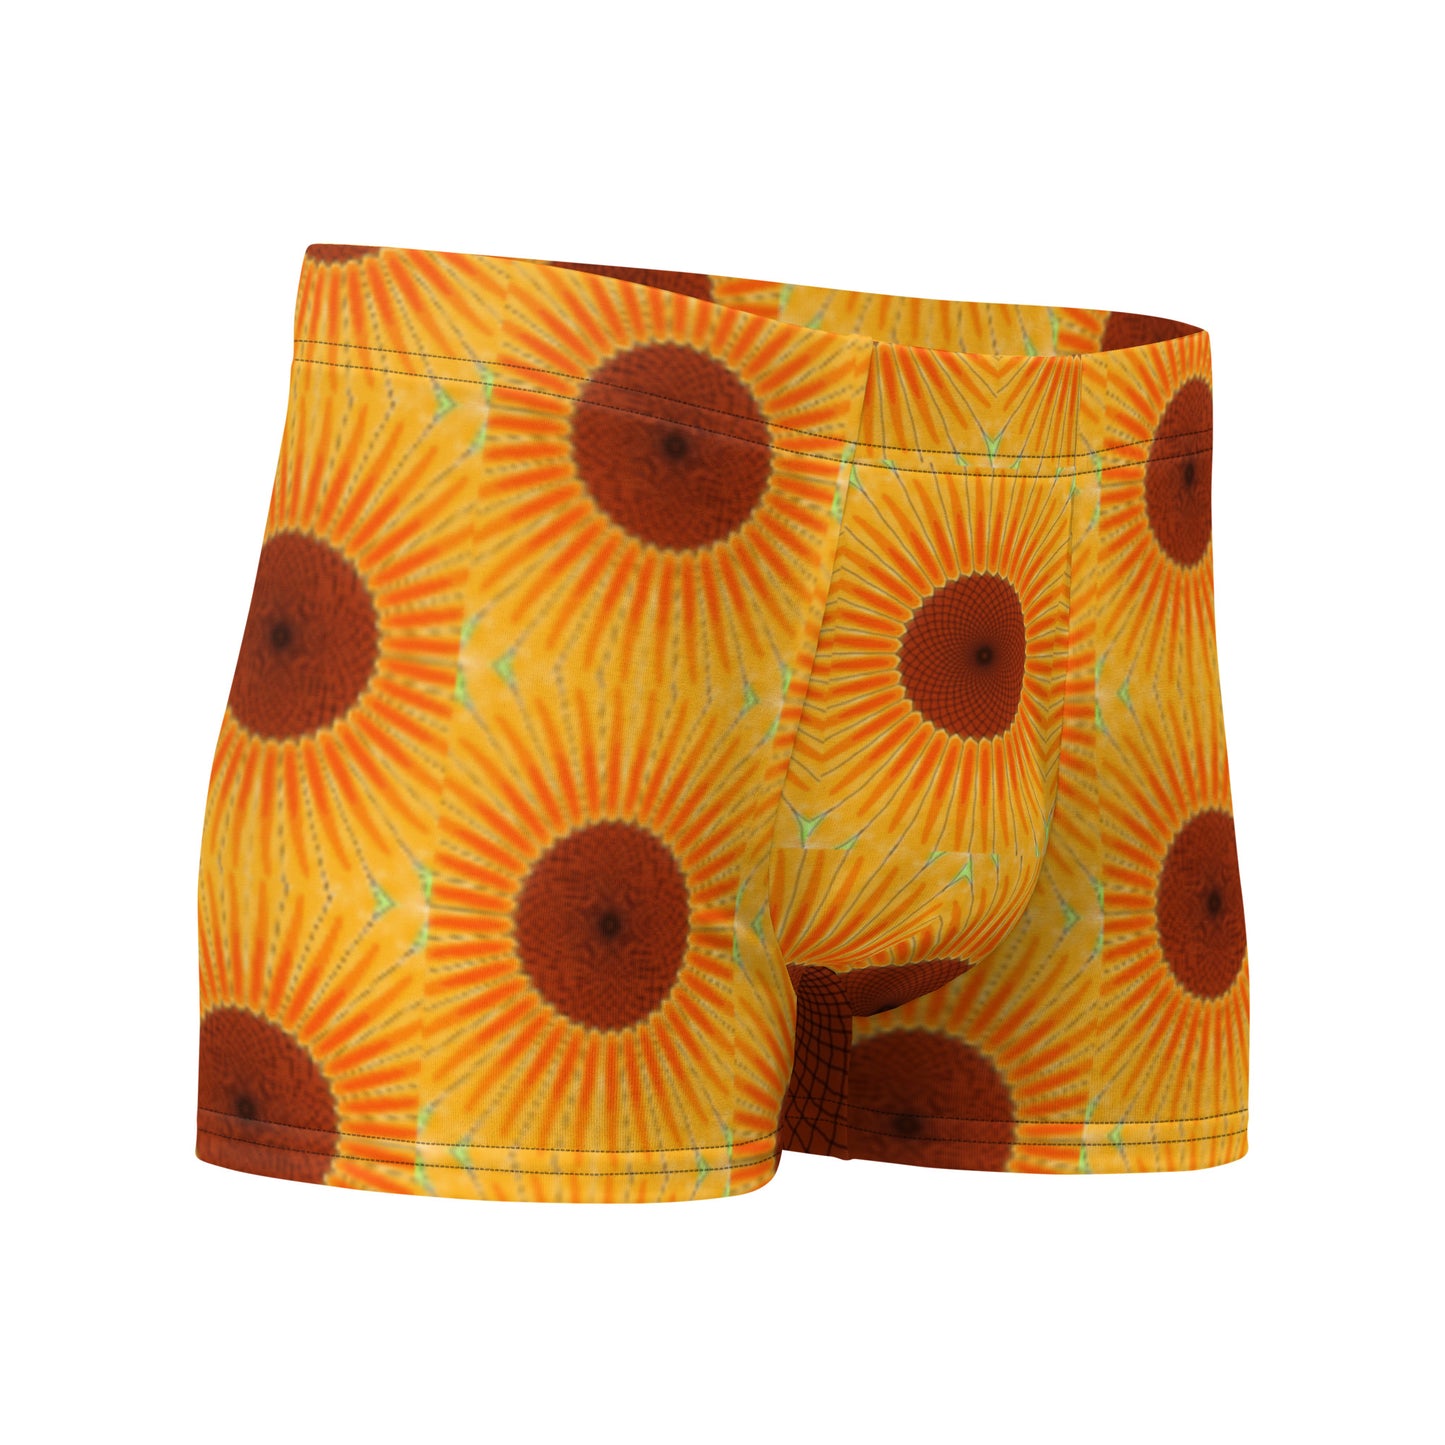 Boxer Briefs "Sunflower" designs